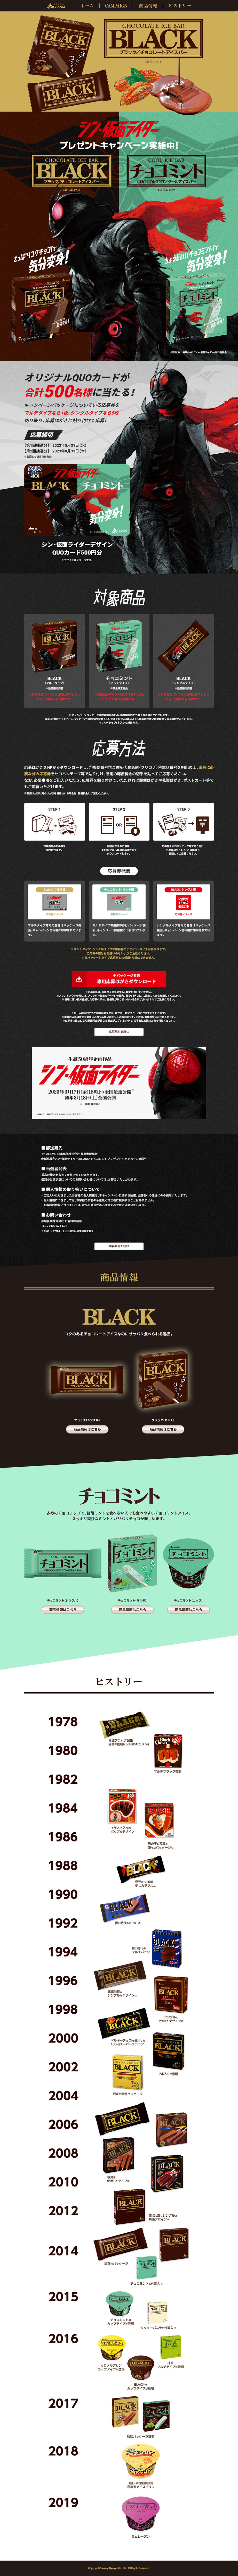 BLACK & チョコミント_pc_1